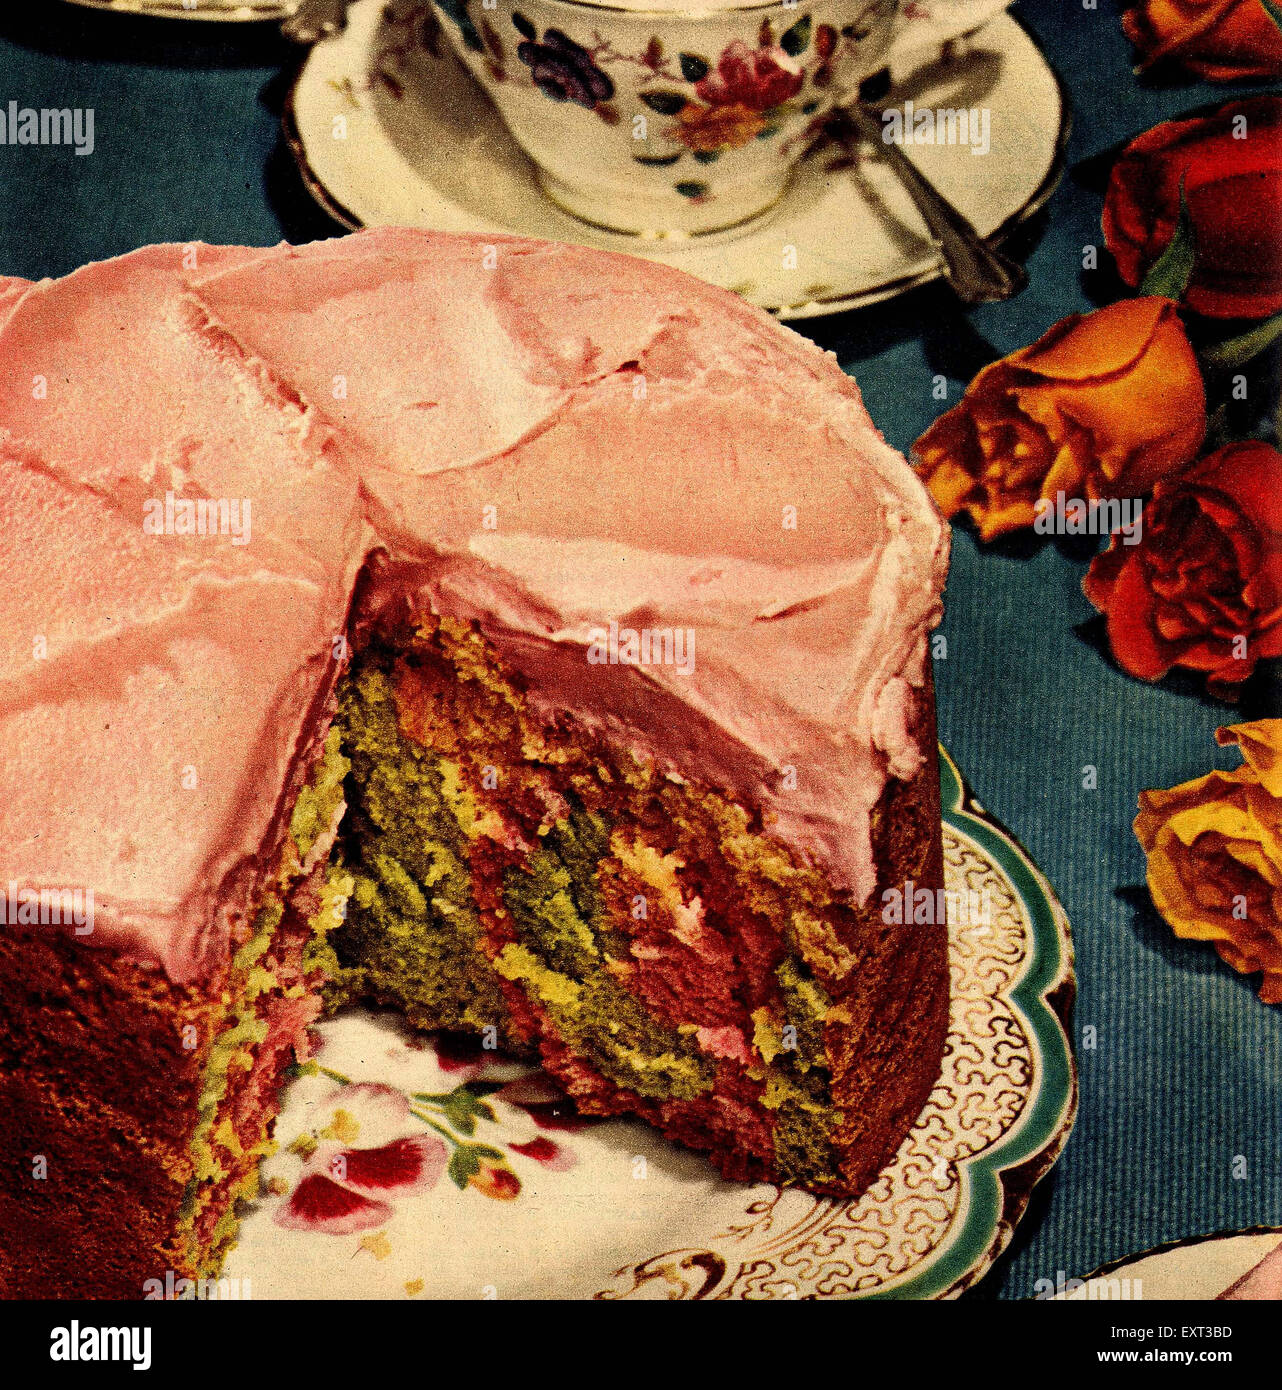 1950s UK Harlequin Cake Magazine Plate Stock Photo